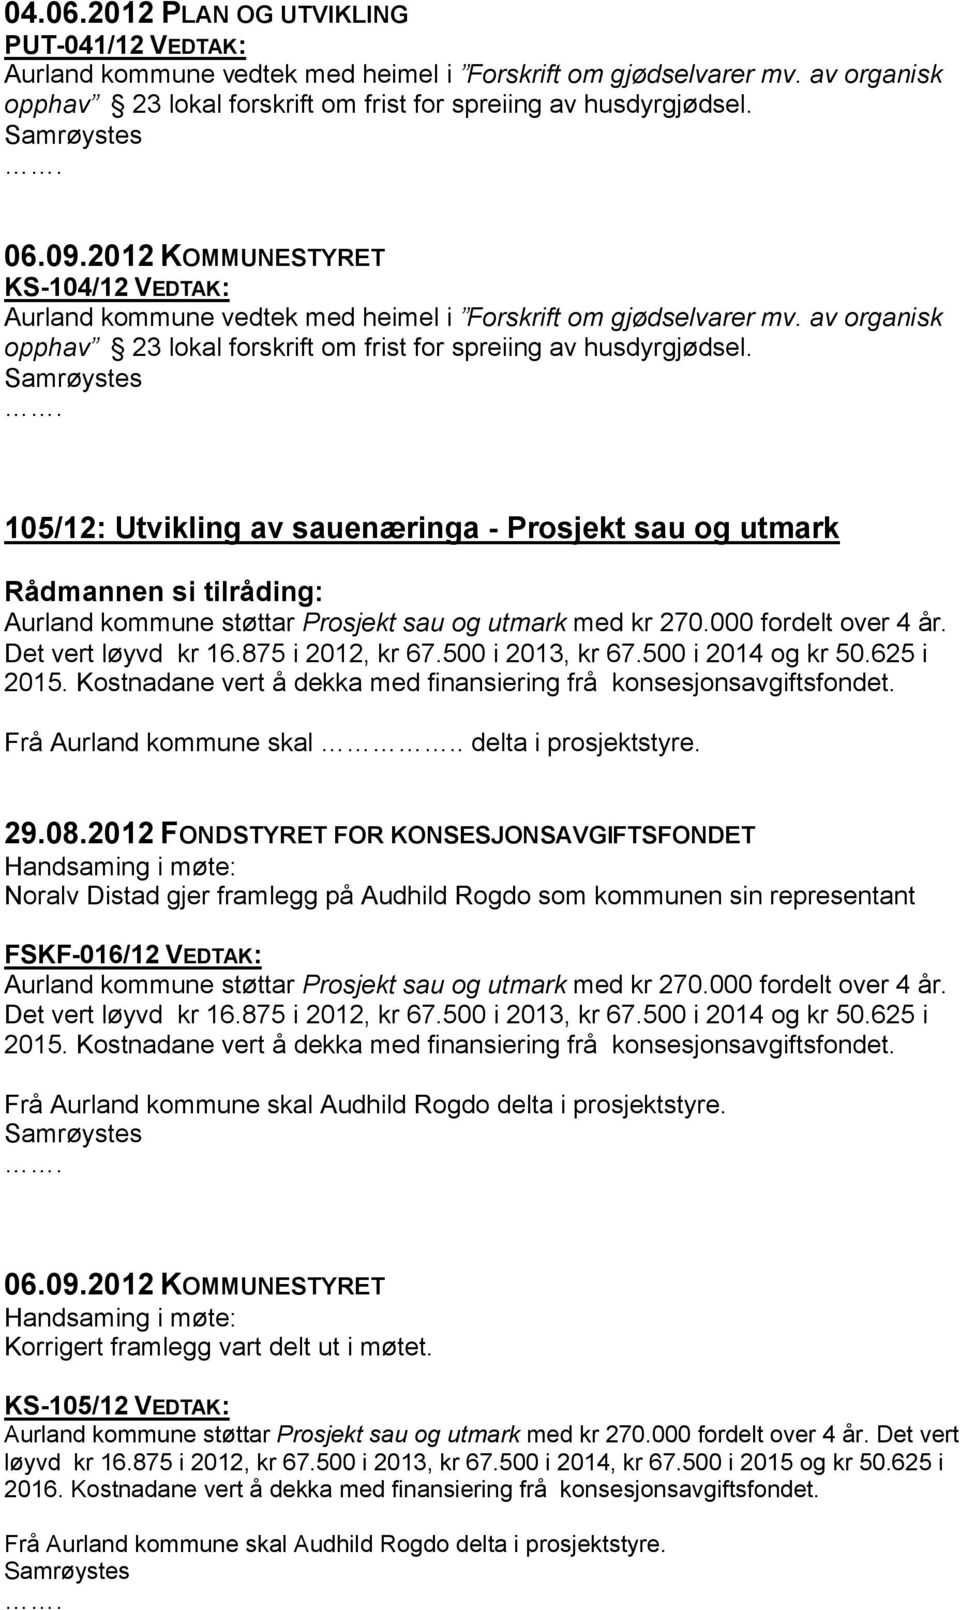 105/12: Utvikling av sauenæringa - Prosjekt sau og utmark Aurland kommune støttar Prosjekt sau og utmark med kr 270.000 fordelt over 4 år. Det vert løyvd kr 16.875 i 2012, kr 67.500 i 2013, kr 67.